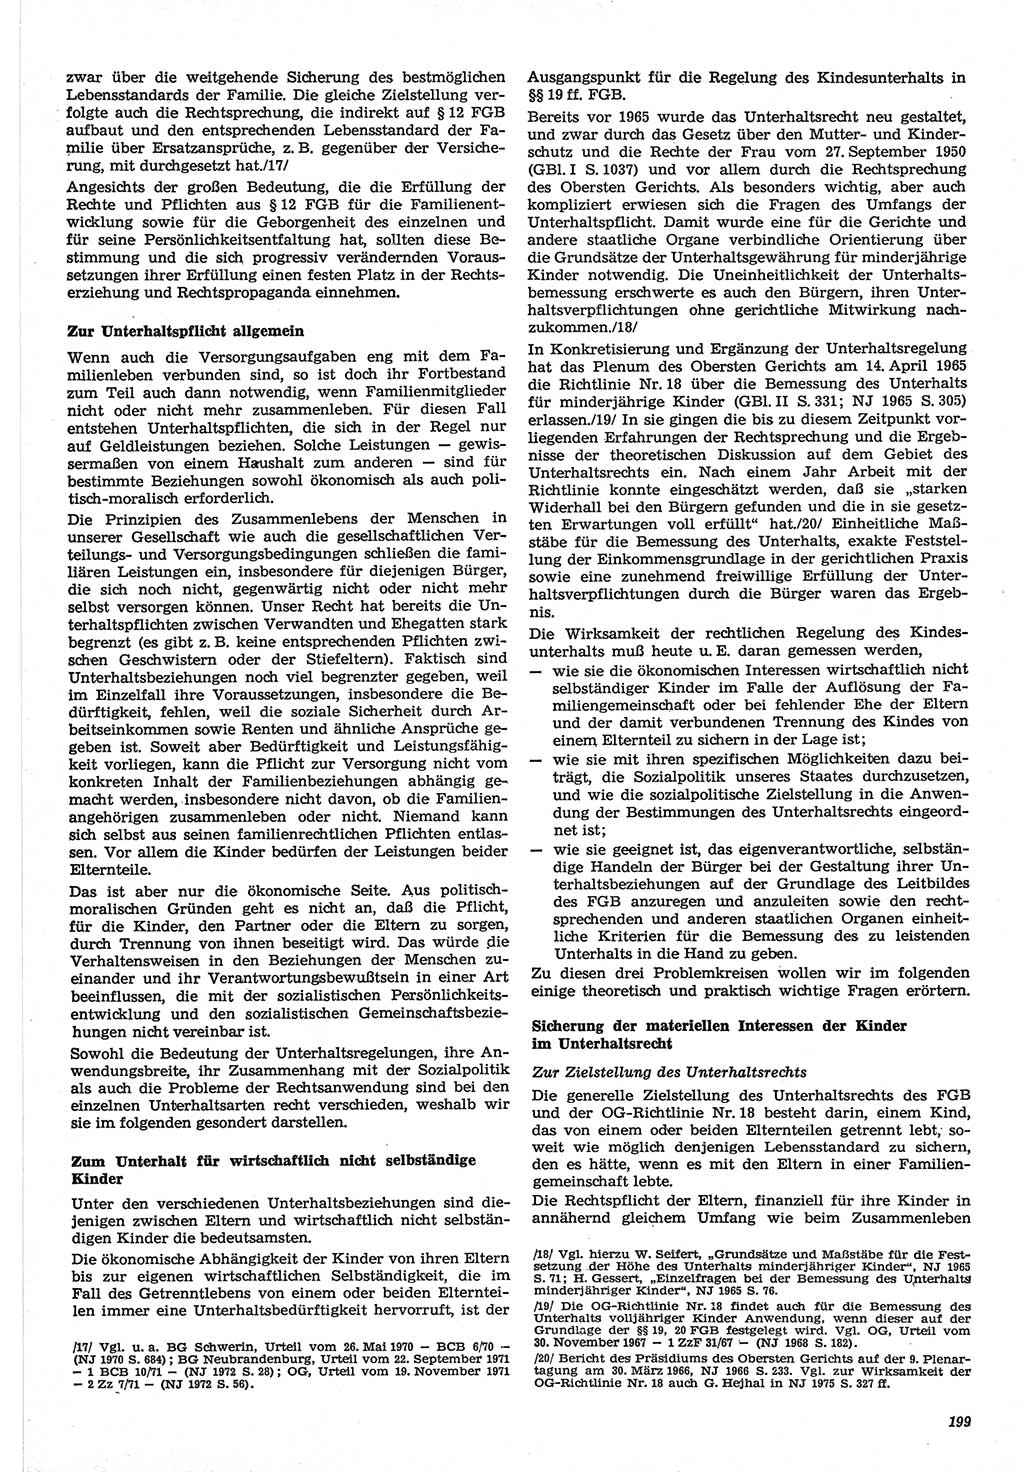 Neue Justiz (NJ), Zeitschrift für Recht und Rechtswissenschaft-Zeitschrift, sozialistisches Recht und Gesetzlichkeit, 31. Jahrgang 1977, Seite 199 (NJ DDR 1977, S. 199)